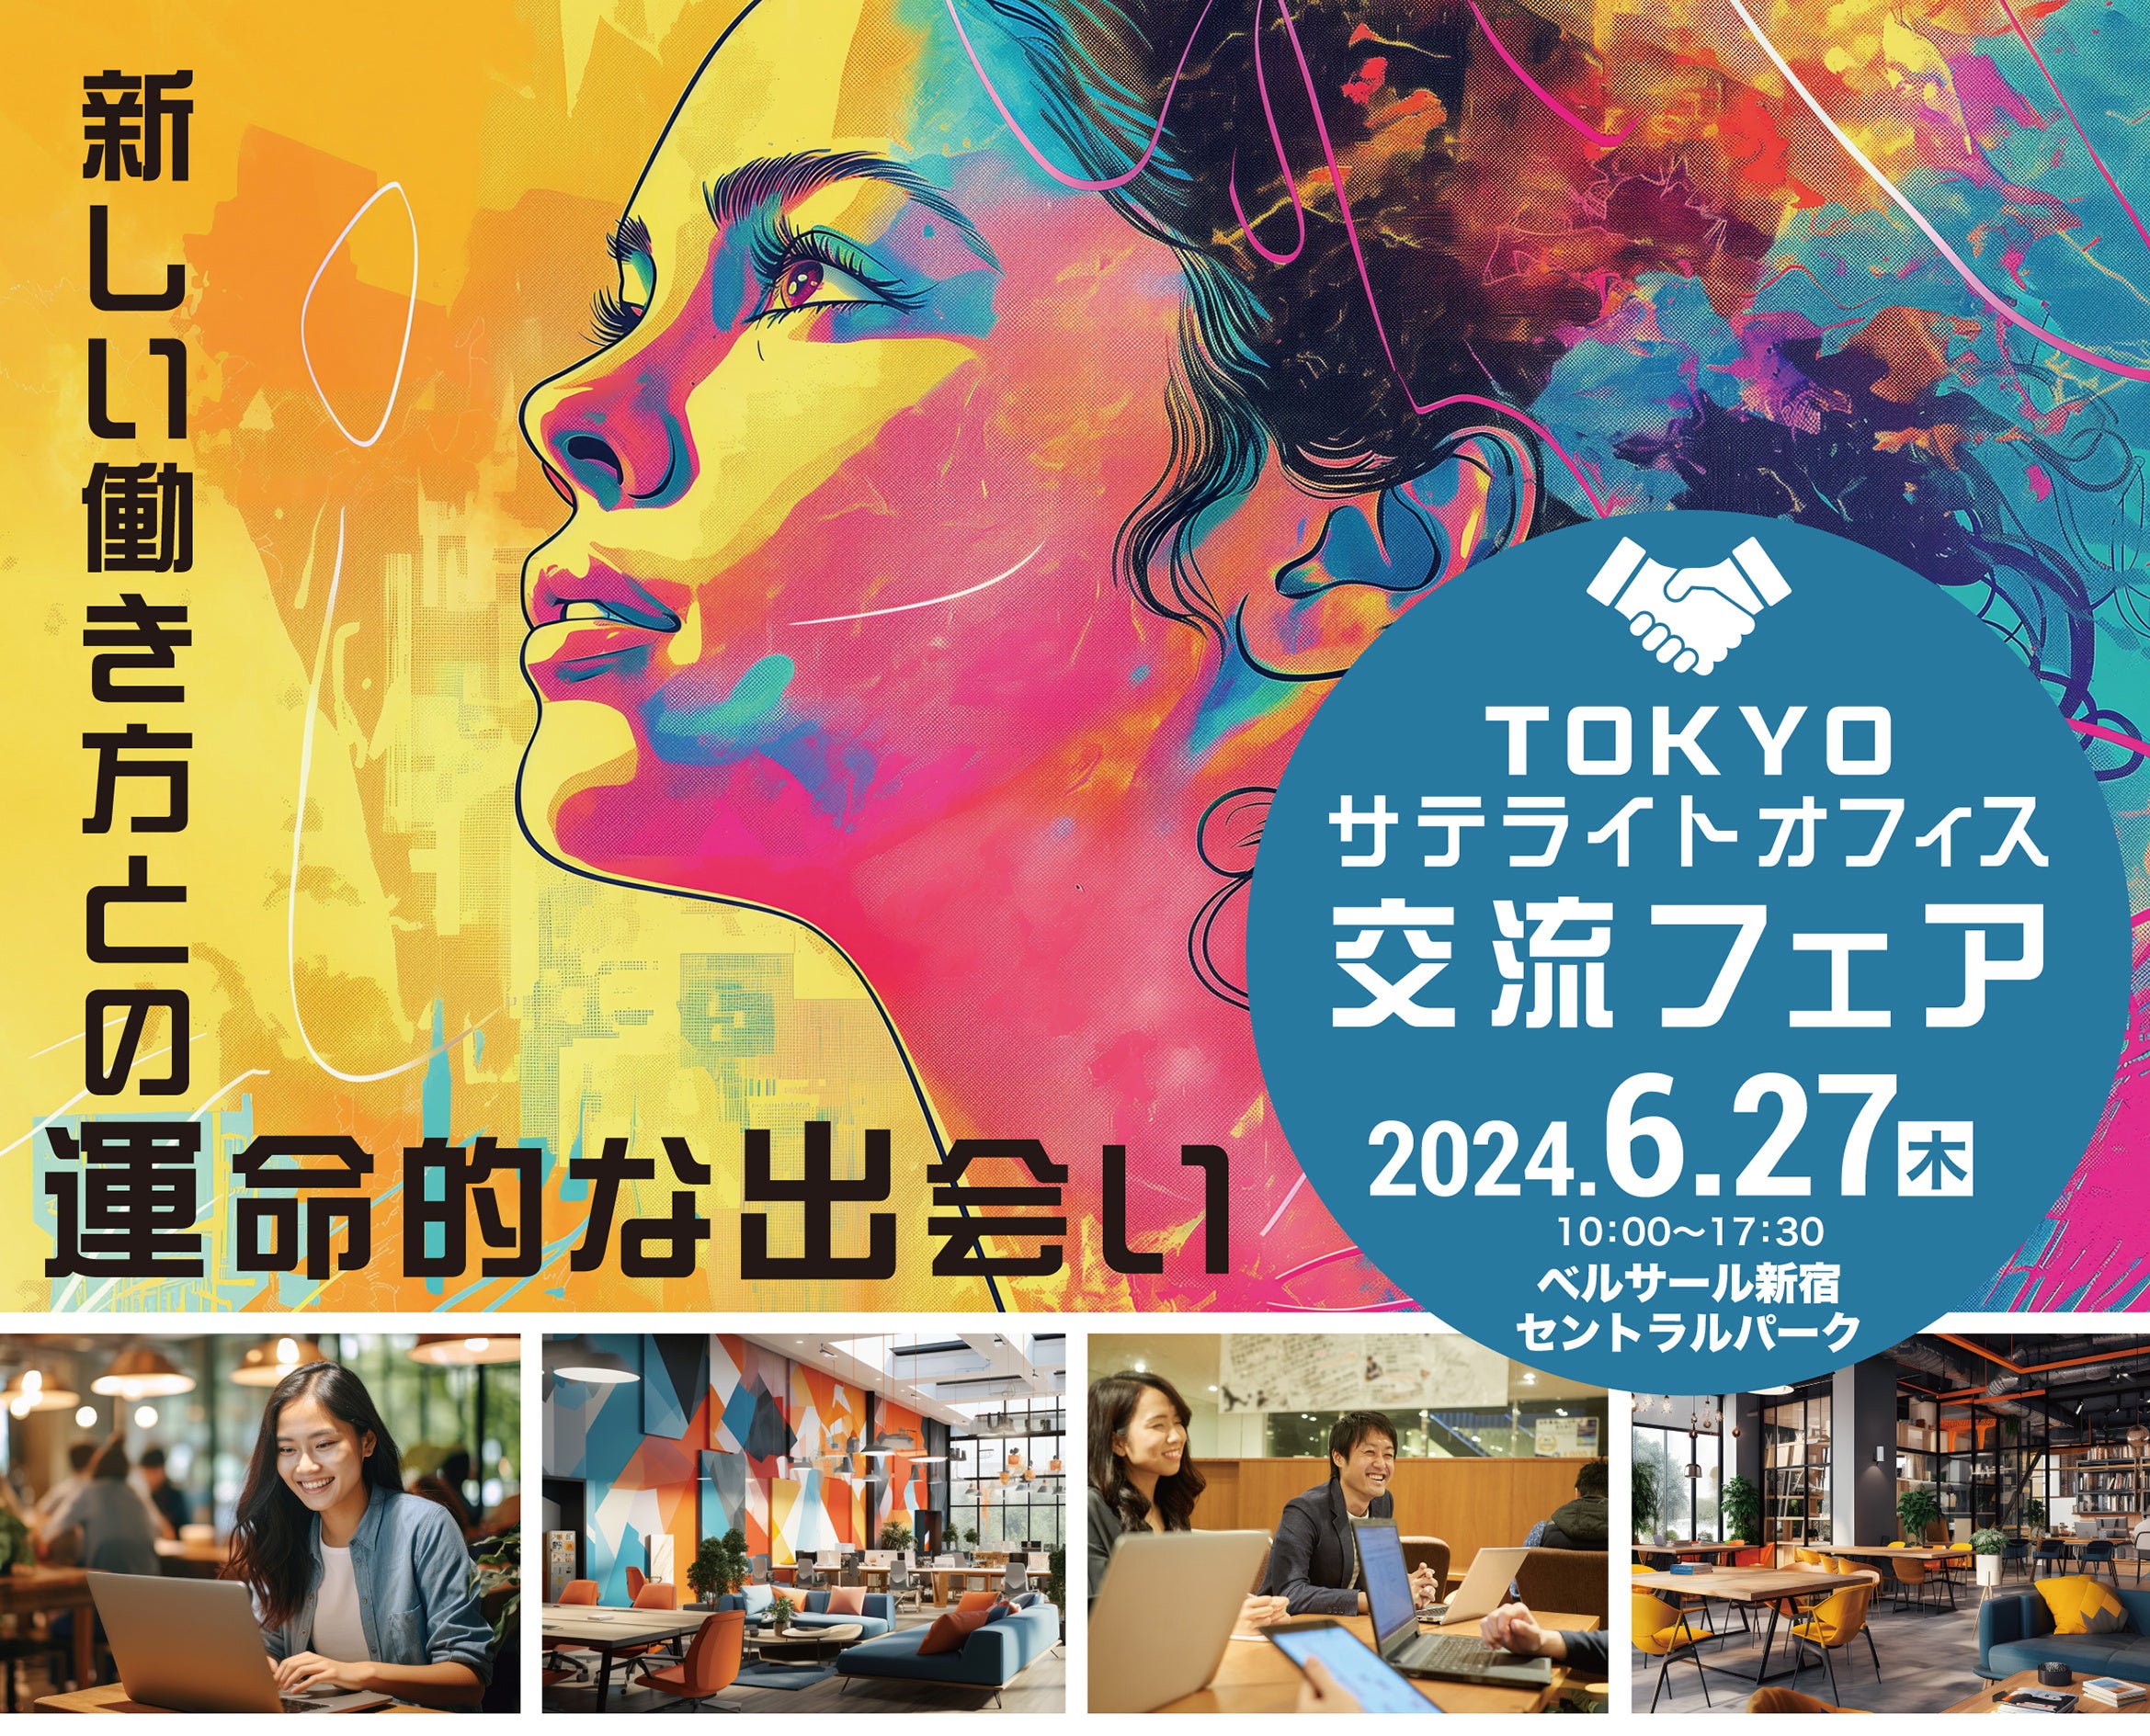 公式サイト引用 - TOKYOサテライトオフィス交流フェア2024年